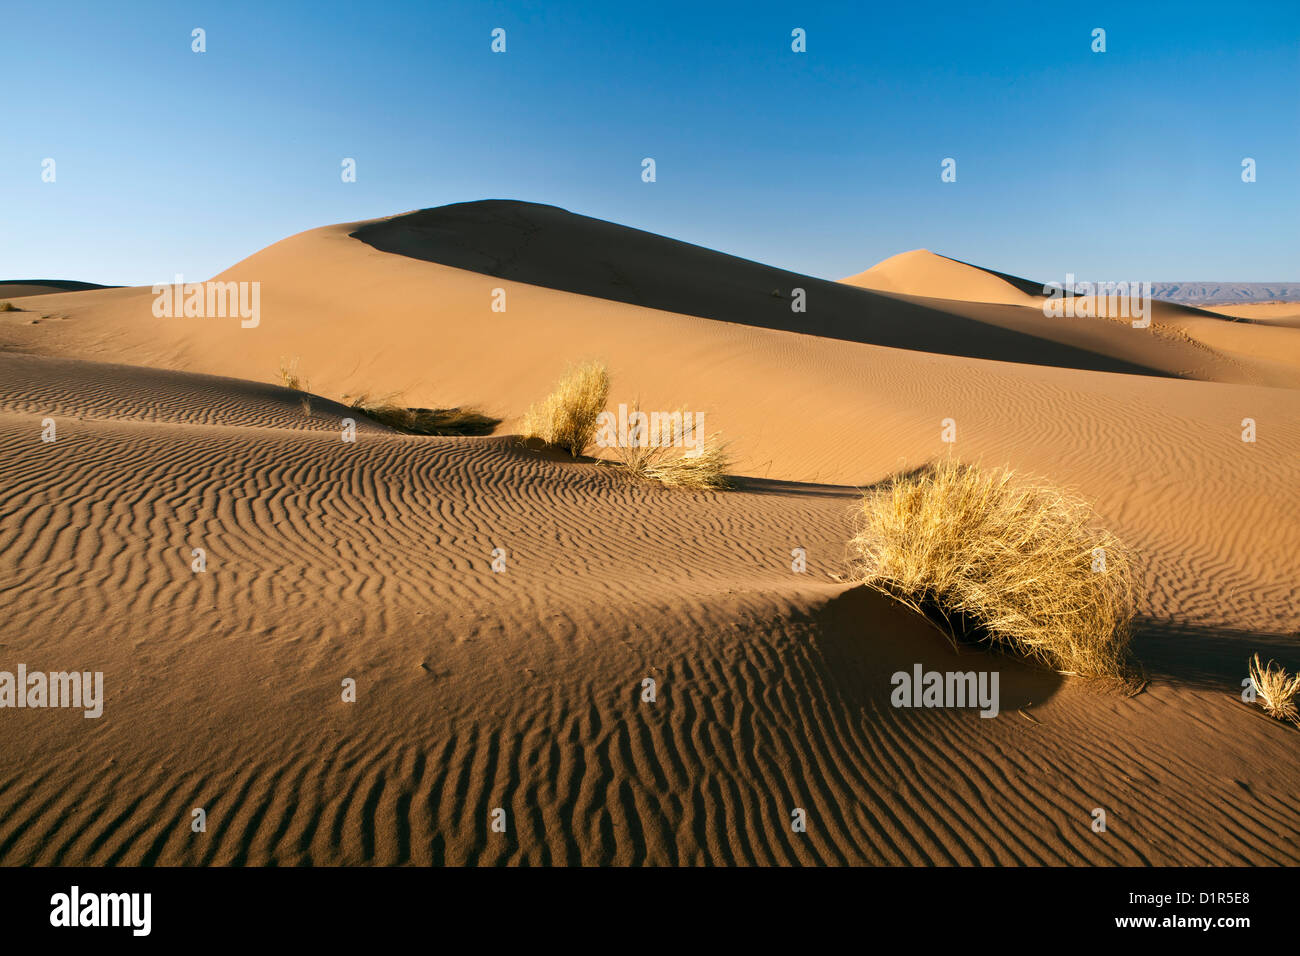 Le Maroc, M'Hamid, Erg Chigaga dunes de sable. Désert du Sahara. Camp de vacances, un bivouac. Banque D'Images